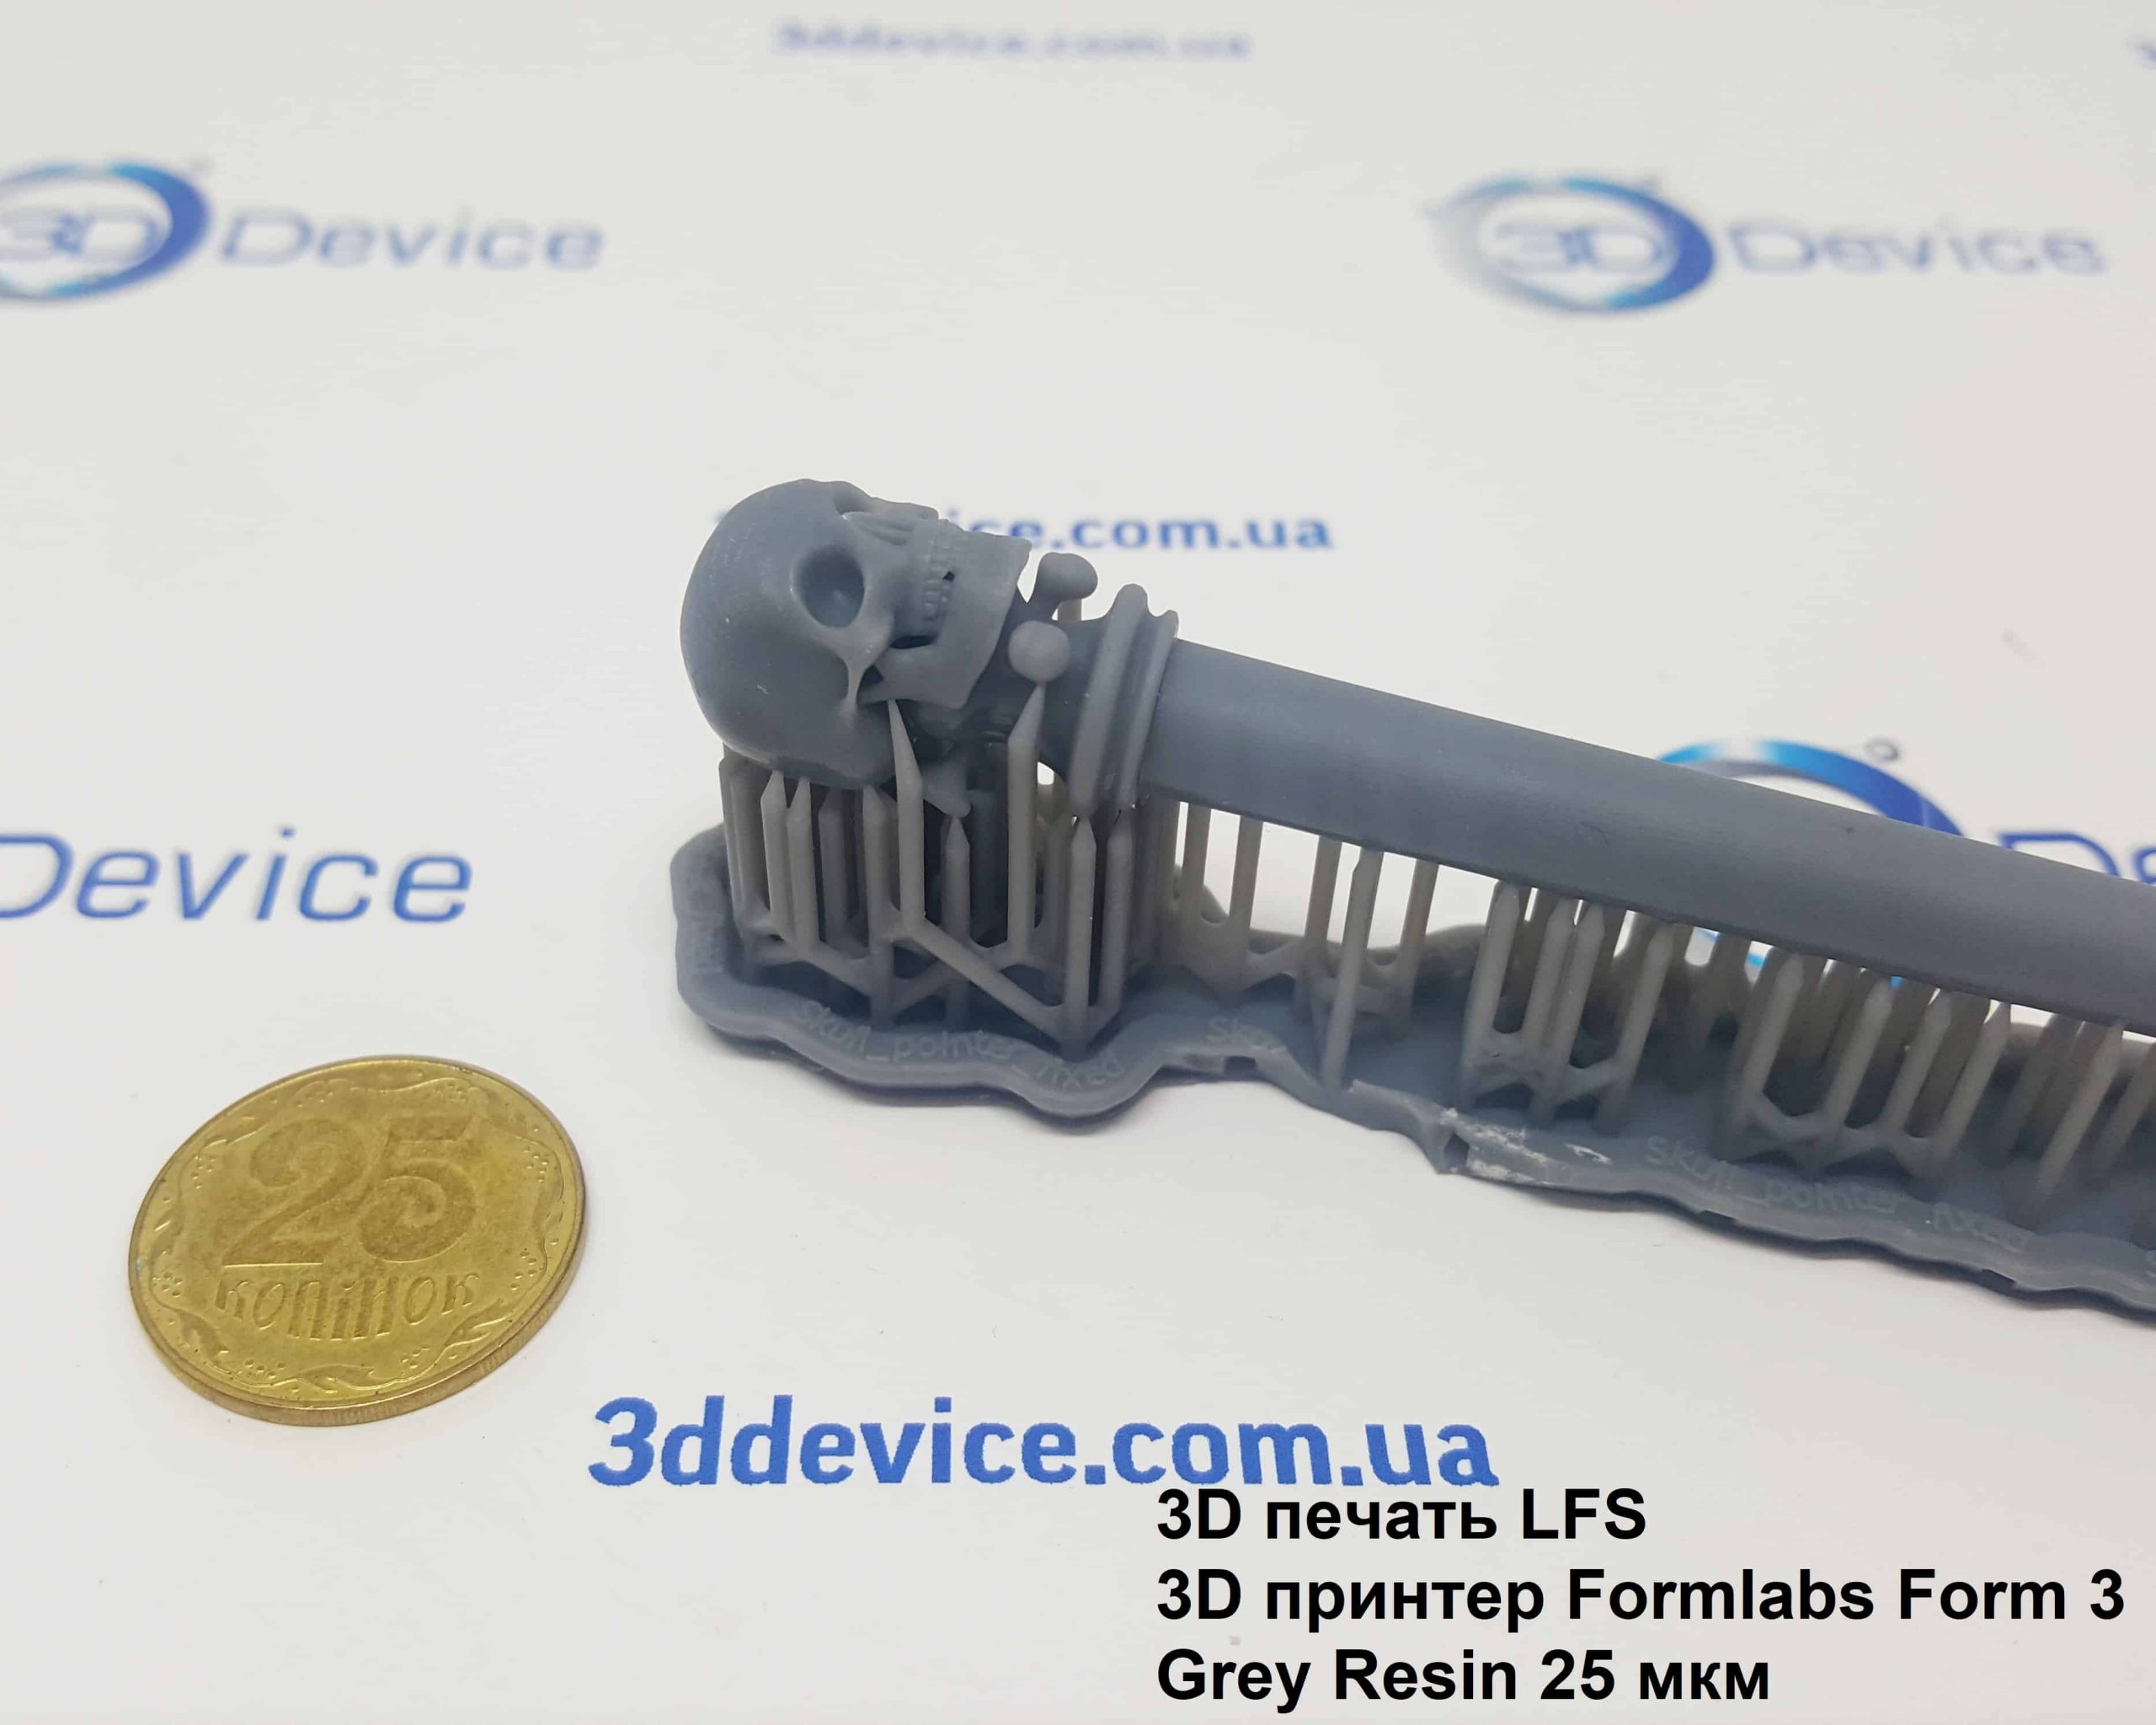 Купить суперточный 3Д принтер Formlabs Form 3 - 3Д печать LFS Grey Resin 25 микрон